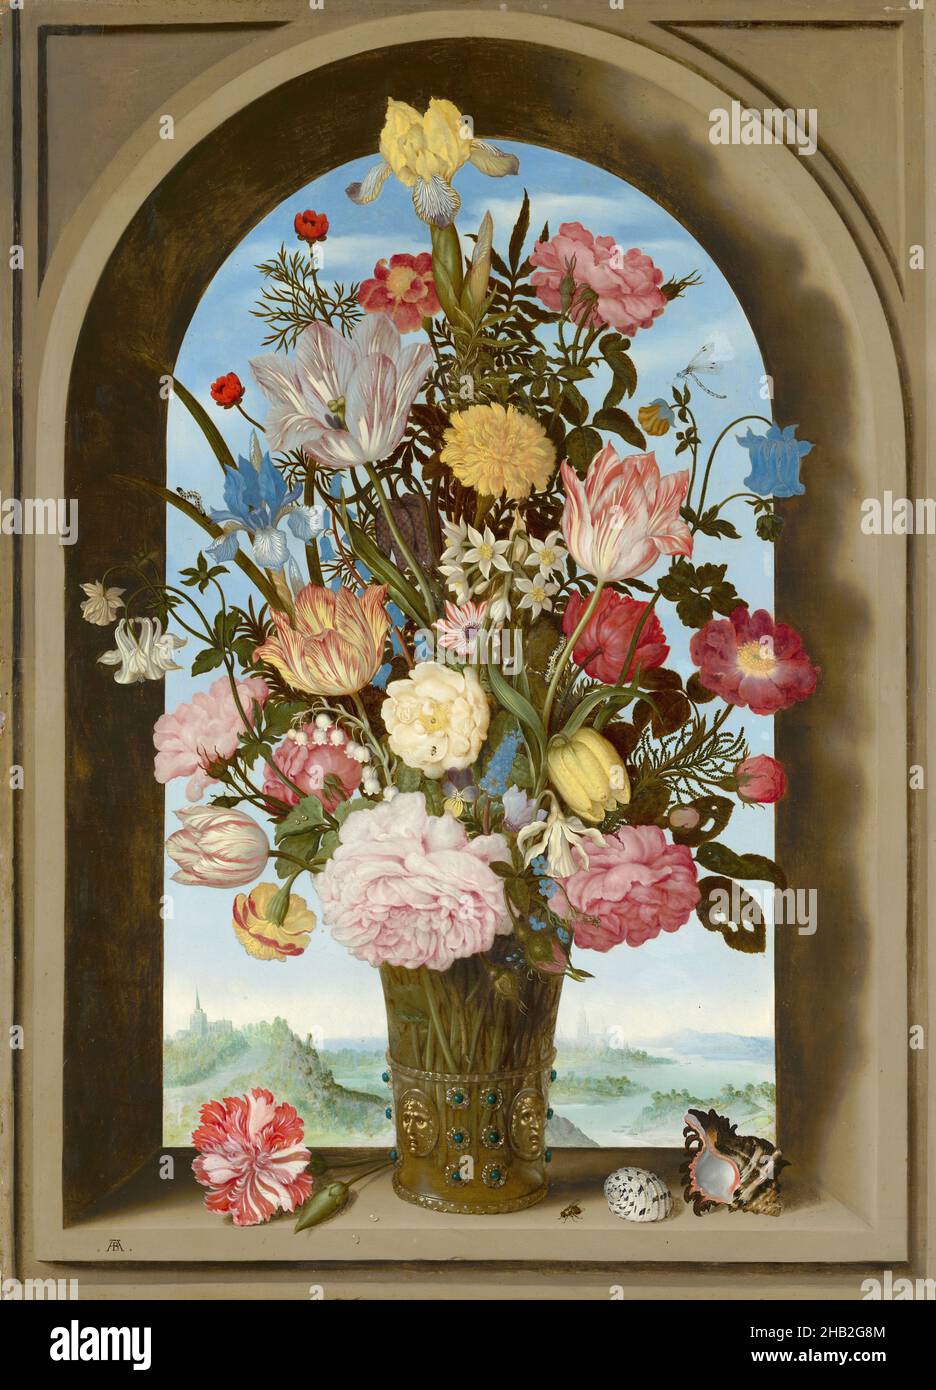 Vase of flowers in a window, Ambrosius Bosschaert de Oude, c. 1618 Stock Photo